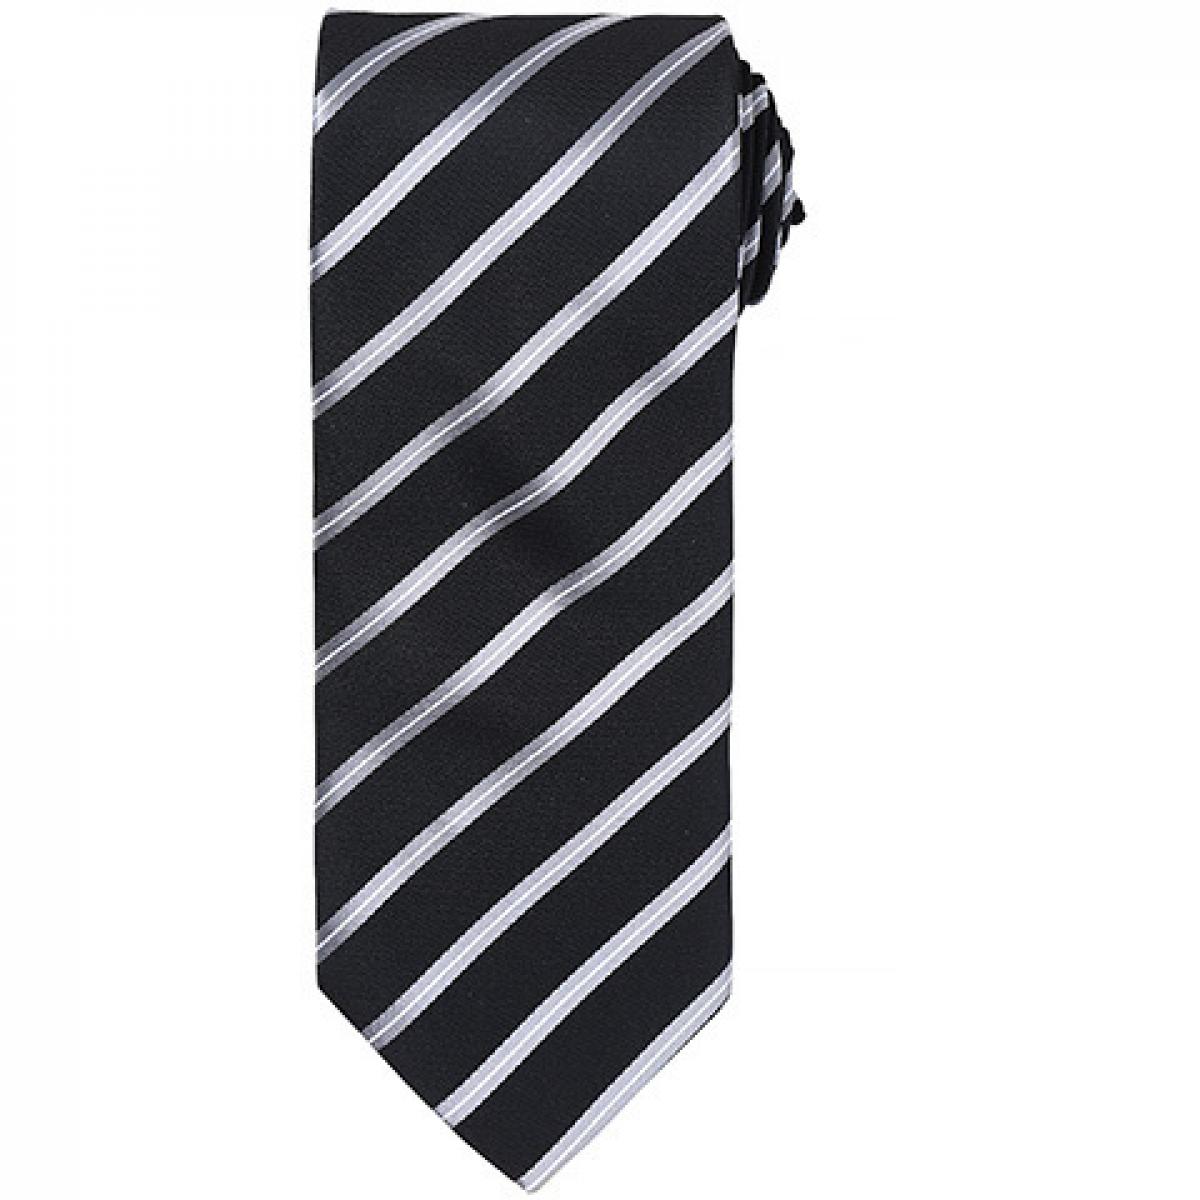 Hersteller: Premier Workwear Herstellernummer: PR784 Artikelbezeichnung: Sports Stripe Tie / Breite 3" / 7,5 cm / Länge 57" / 144 cm Farbe: Black/Silver